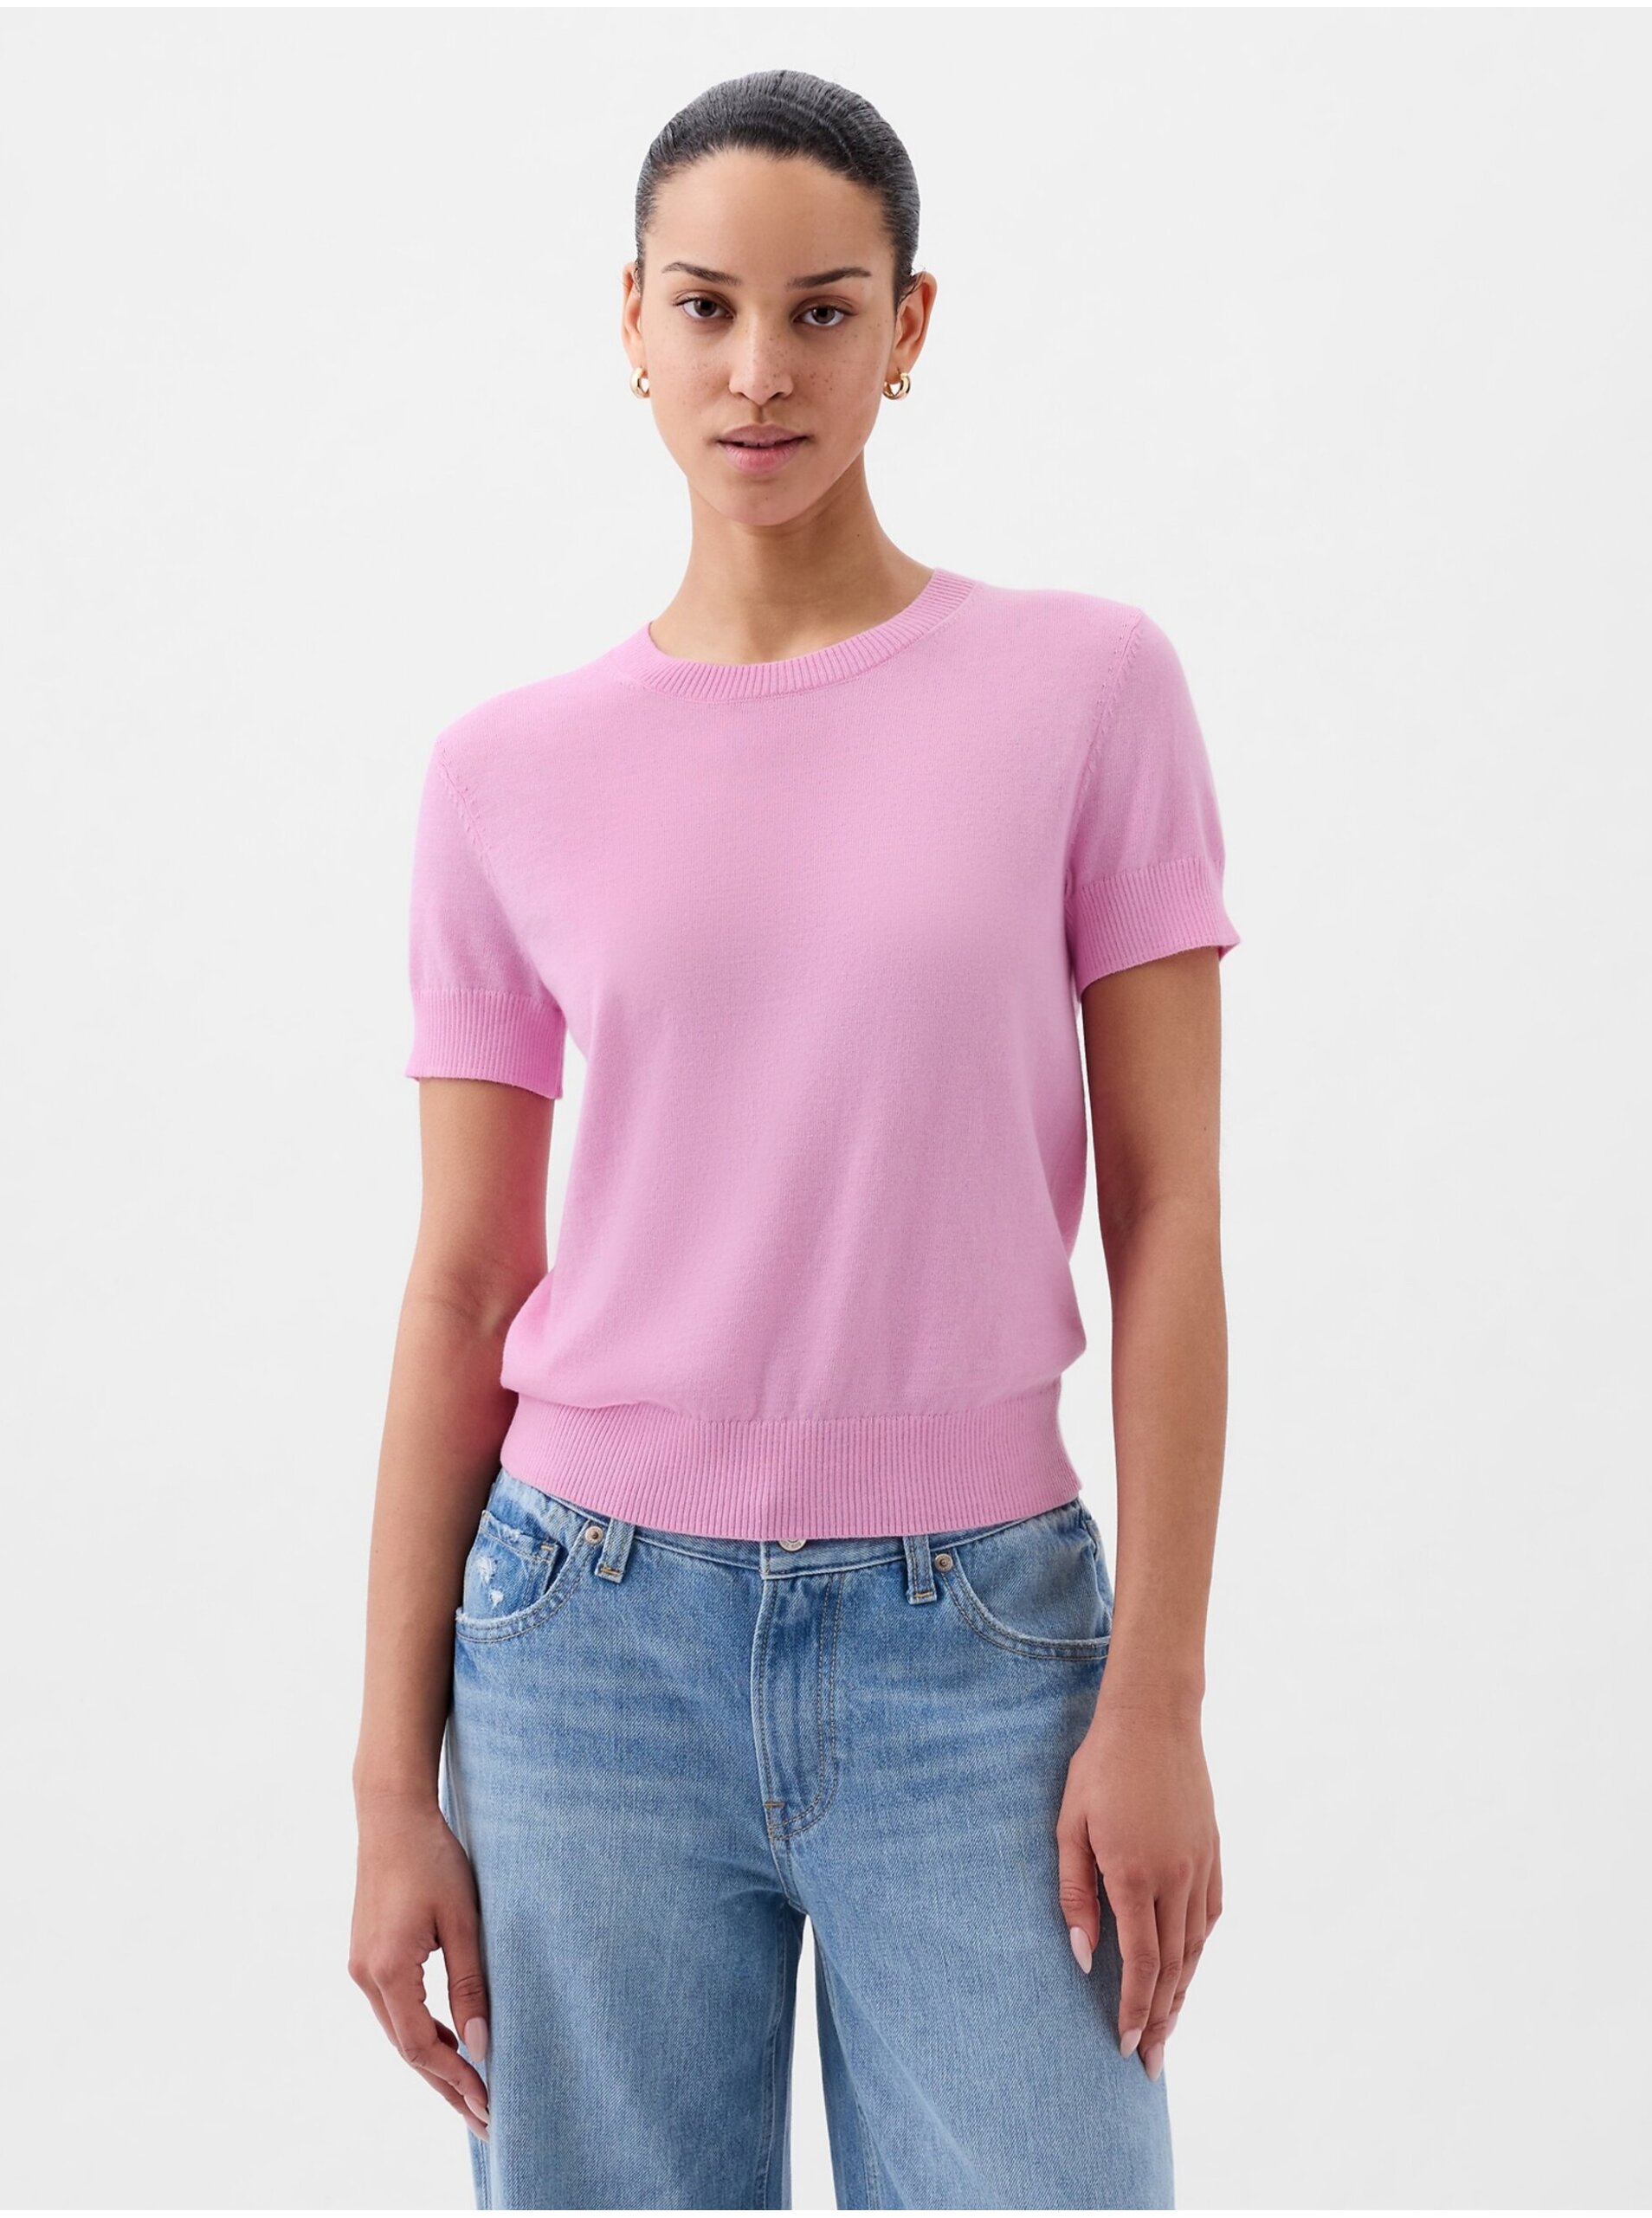 Lacno Ružový dámsky sveter s krátkym rukávom GAP